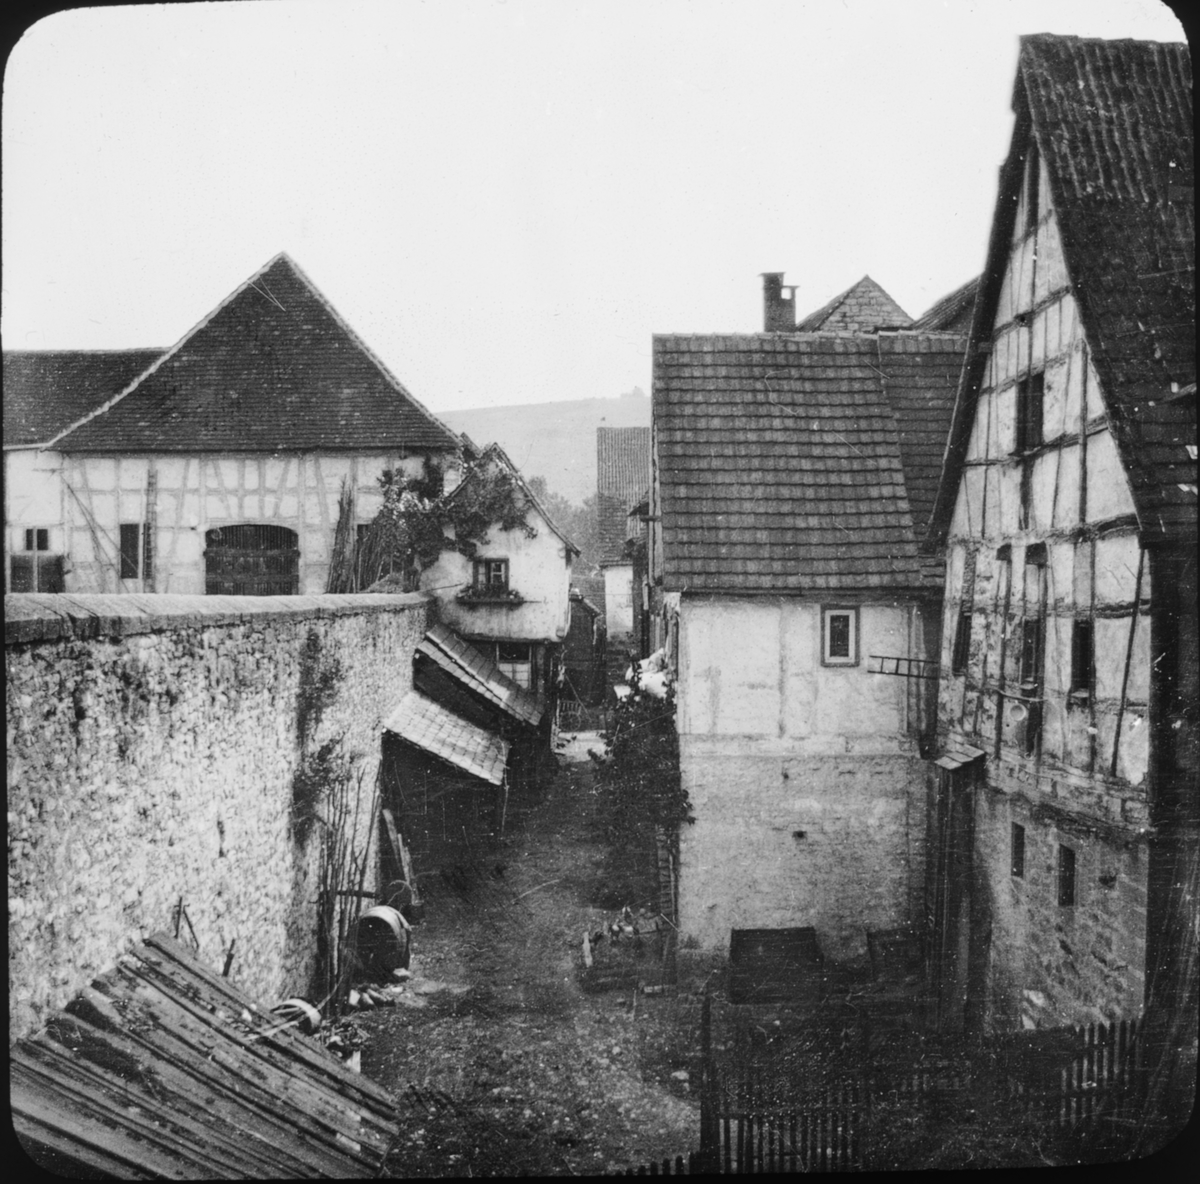 Skioptikonbild med motiv från bakgatan i Besigheim.
Bilden har förvarats i kartong märkt: Resan 1907. Besigheim 10. 30